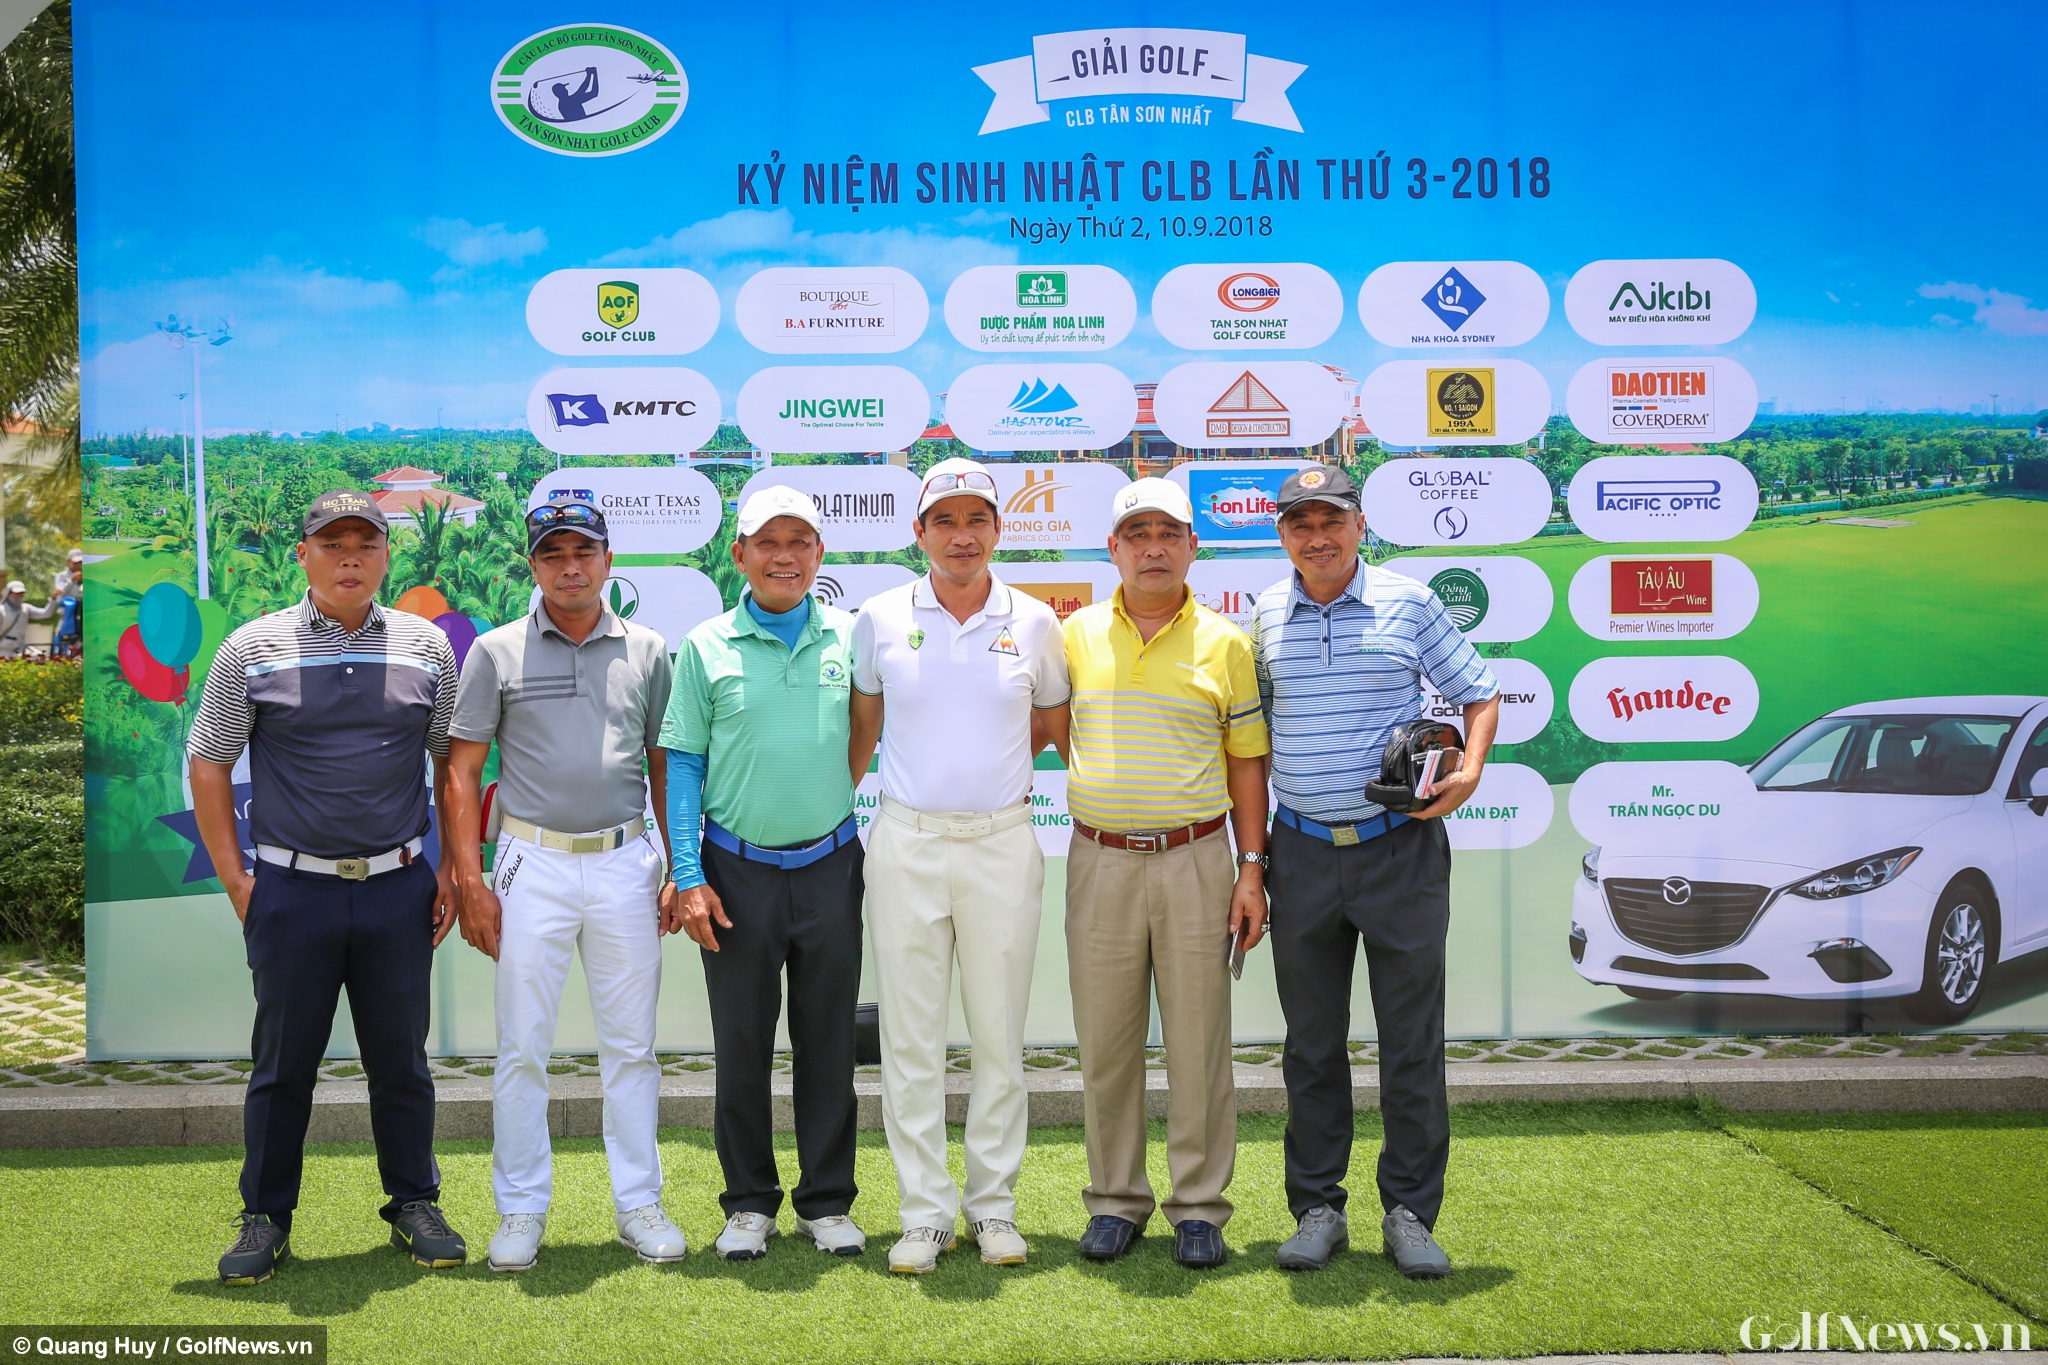 Hơn 300 golfers tranh tài tại Giải golf CLB Tân Sơn Nhất kỷ niệm Sinh nhật Lần thứ 3